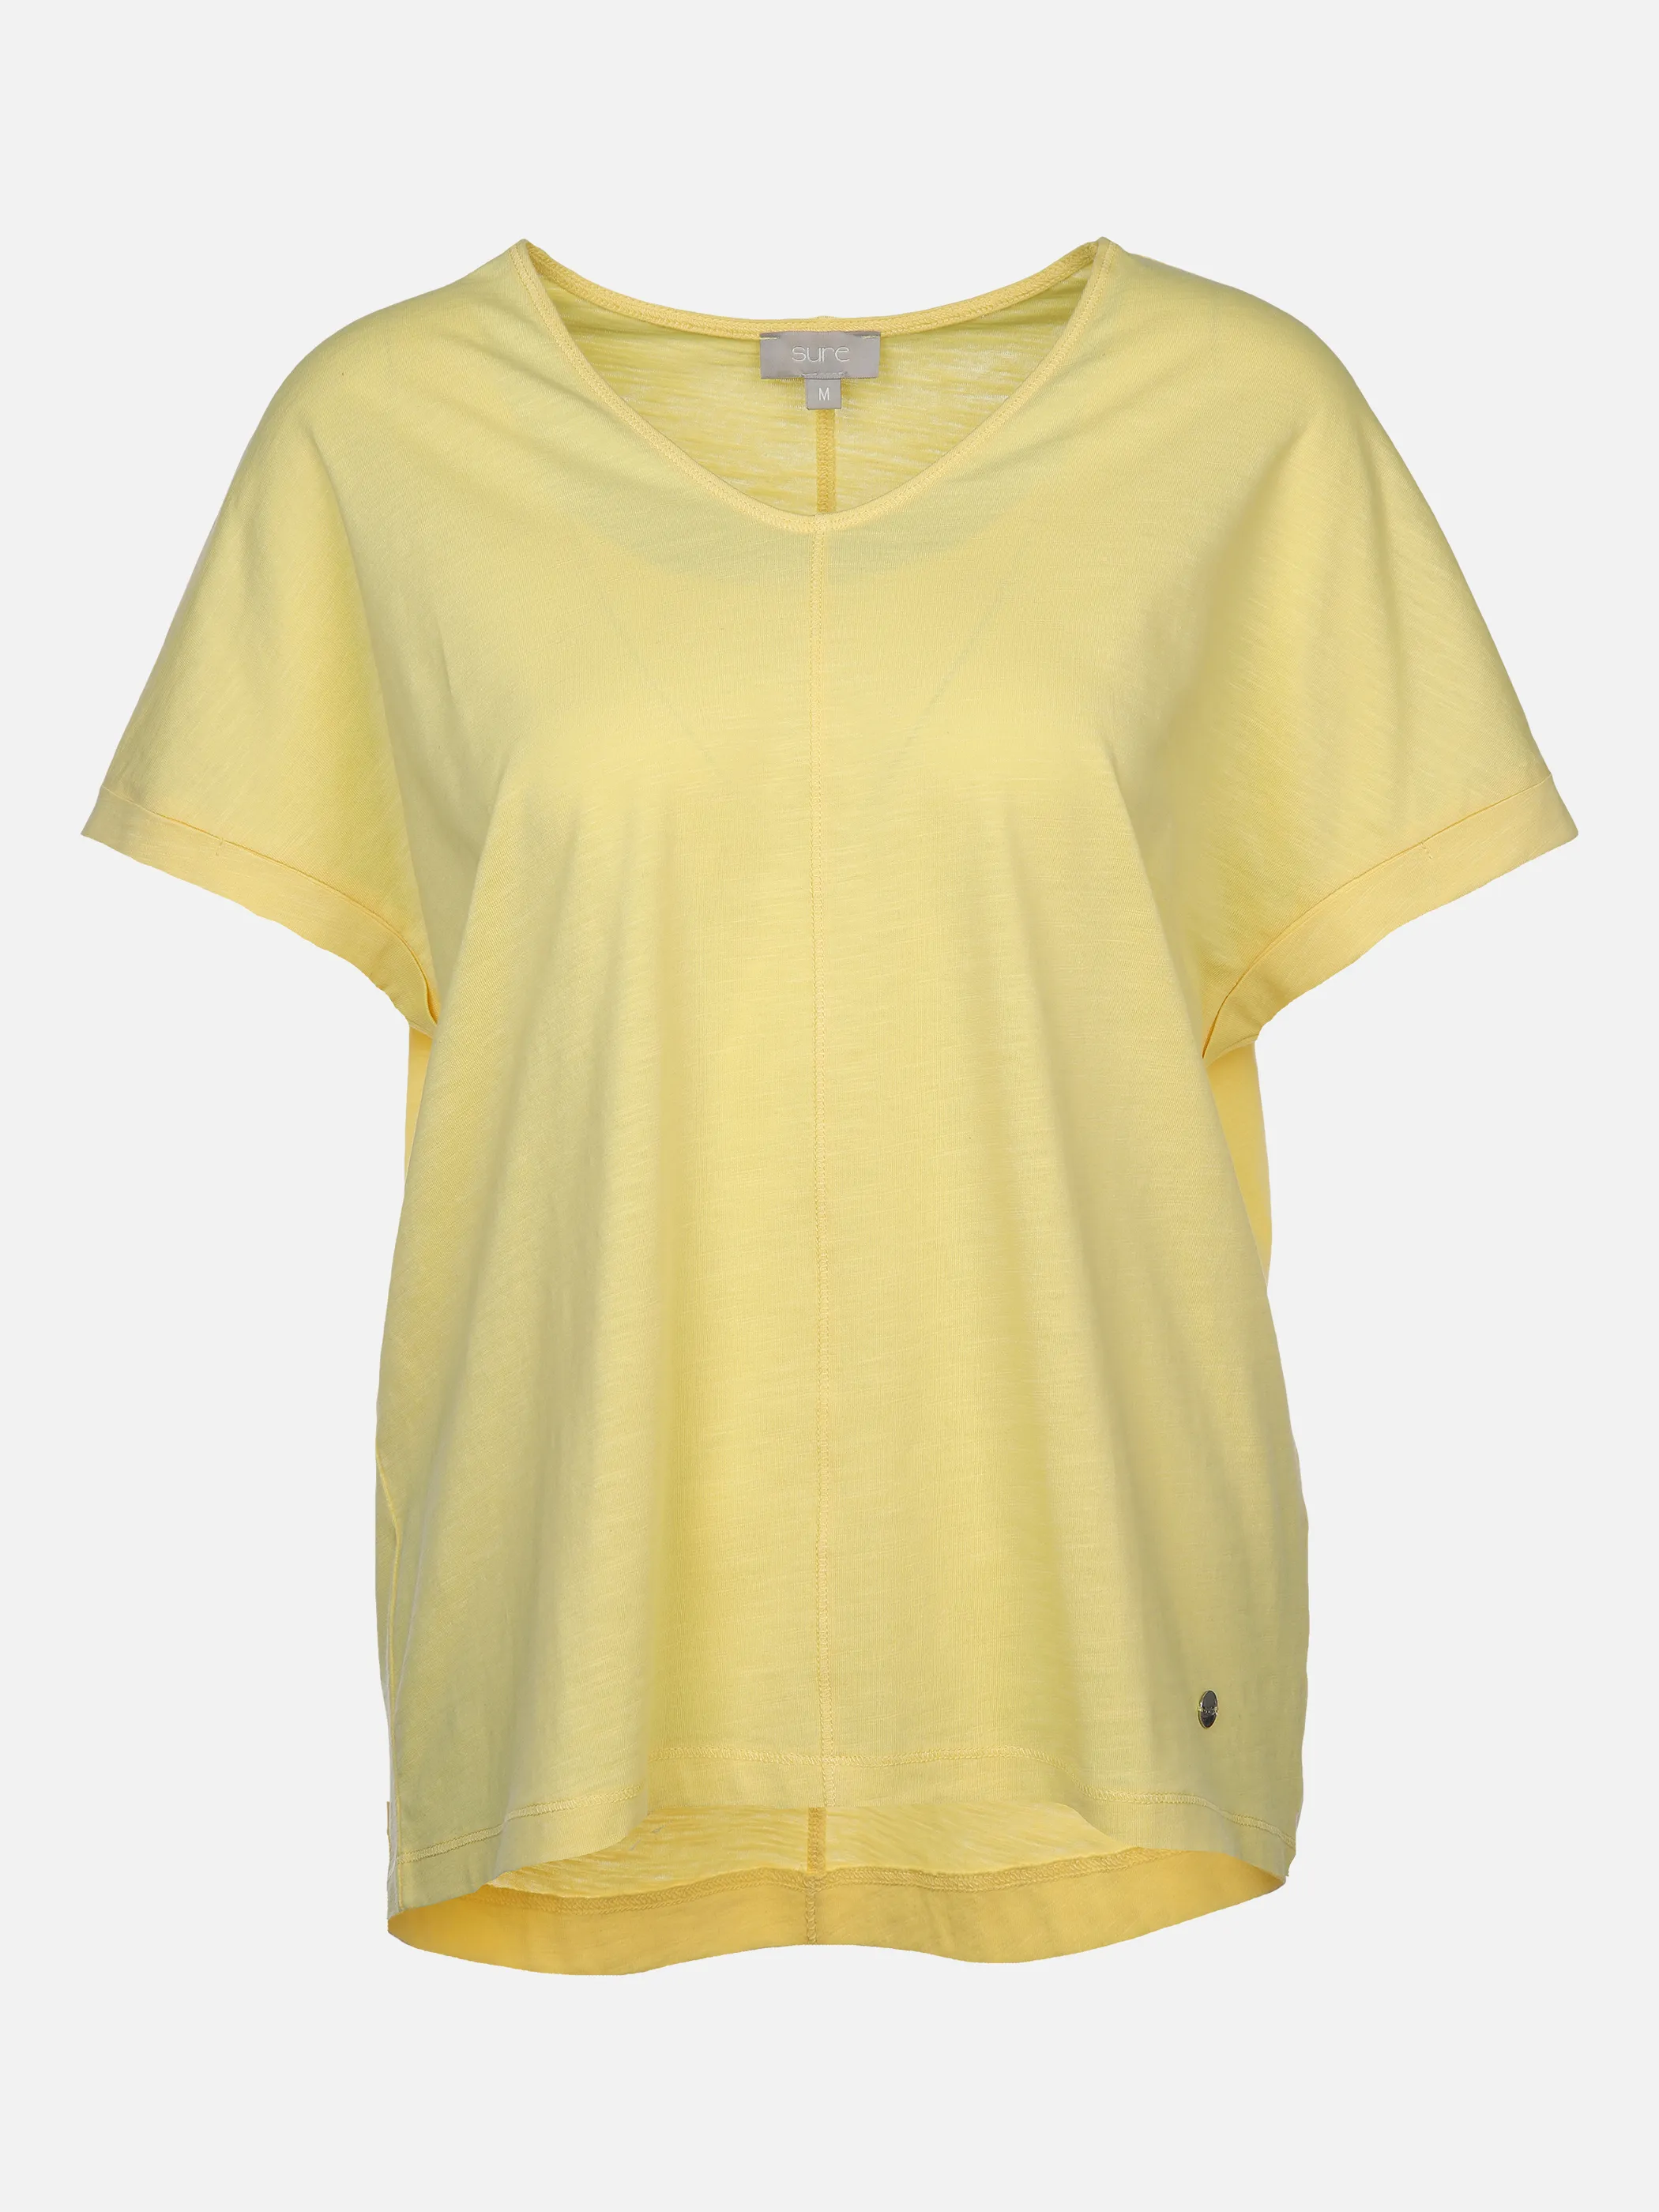 Sure Da-Shirt m.übergroßer Schulter Gelb 873373 VANILLE 1